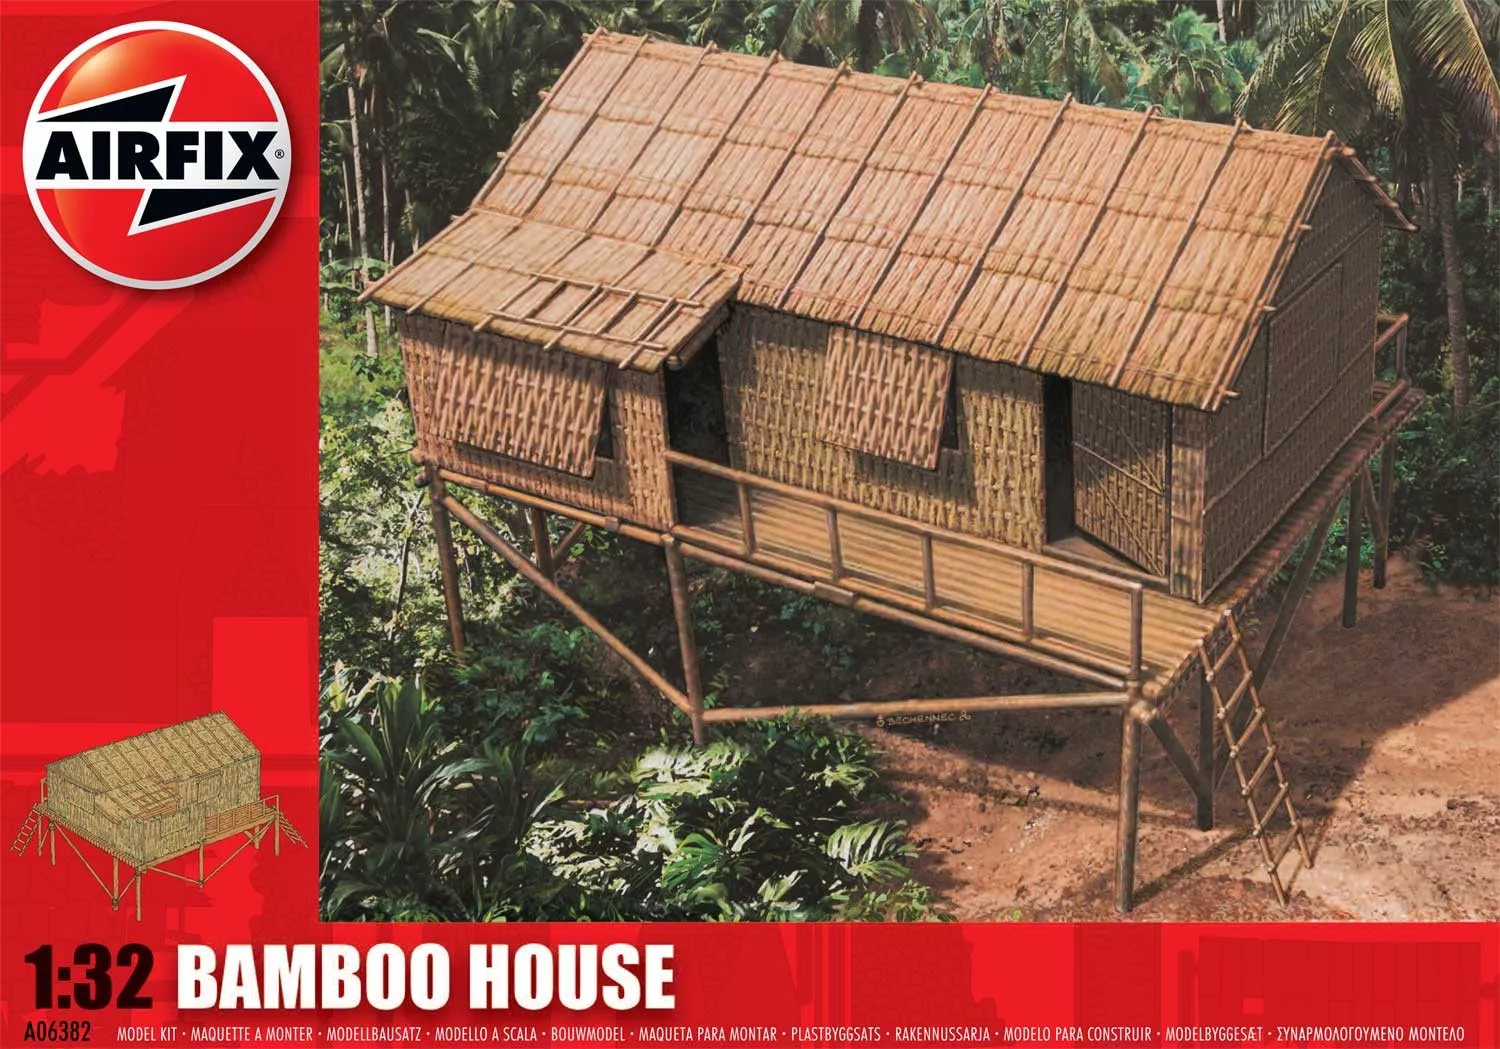 Airfix - Bamboo House épület makett 